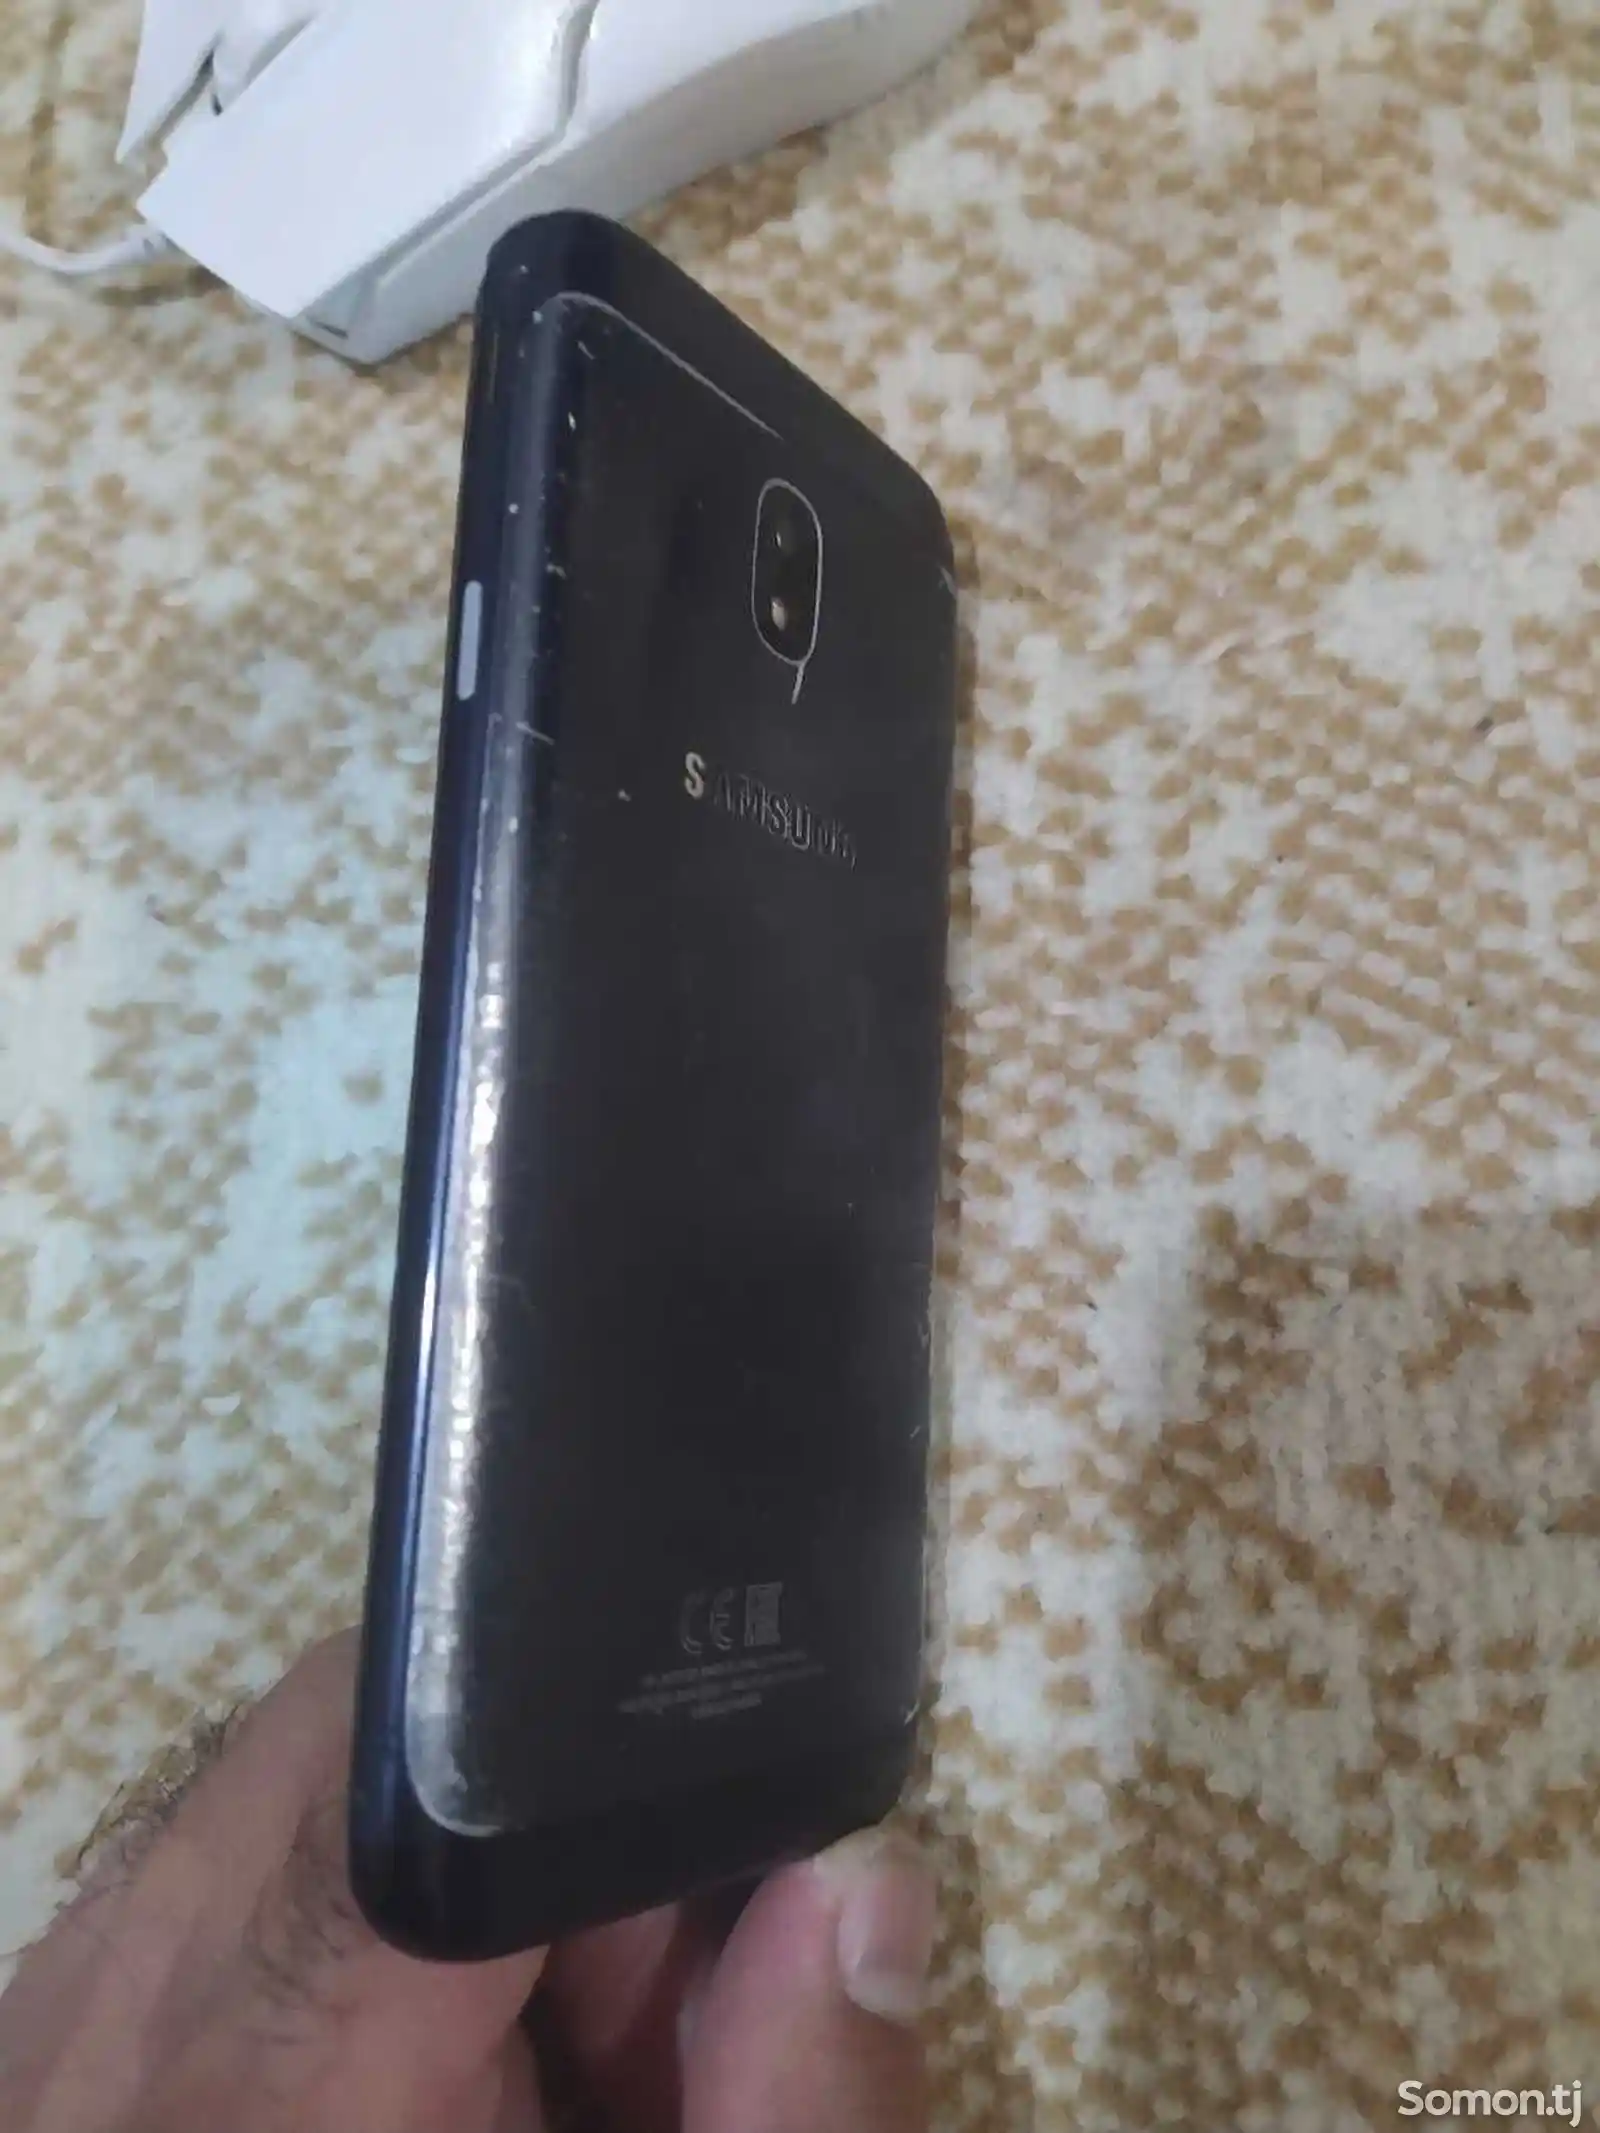 Samsung Galaxy J3-4